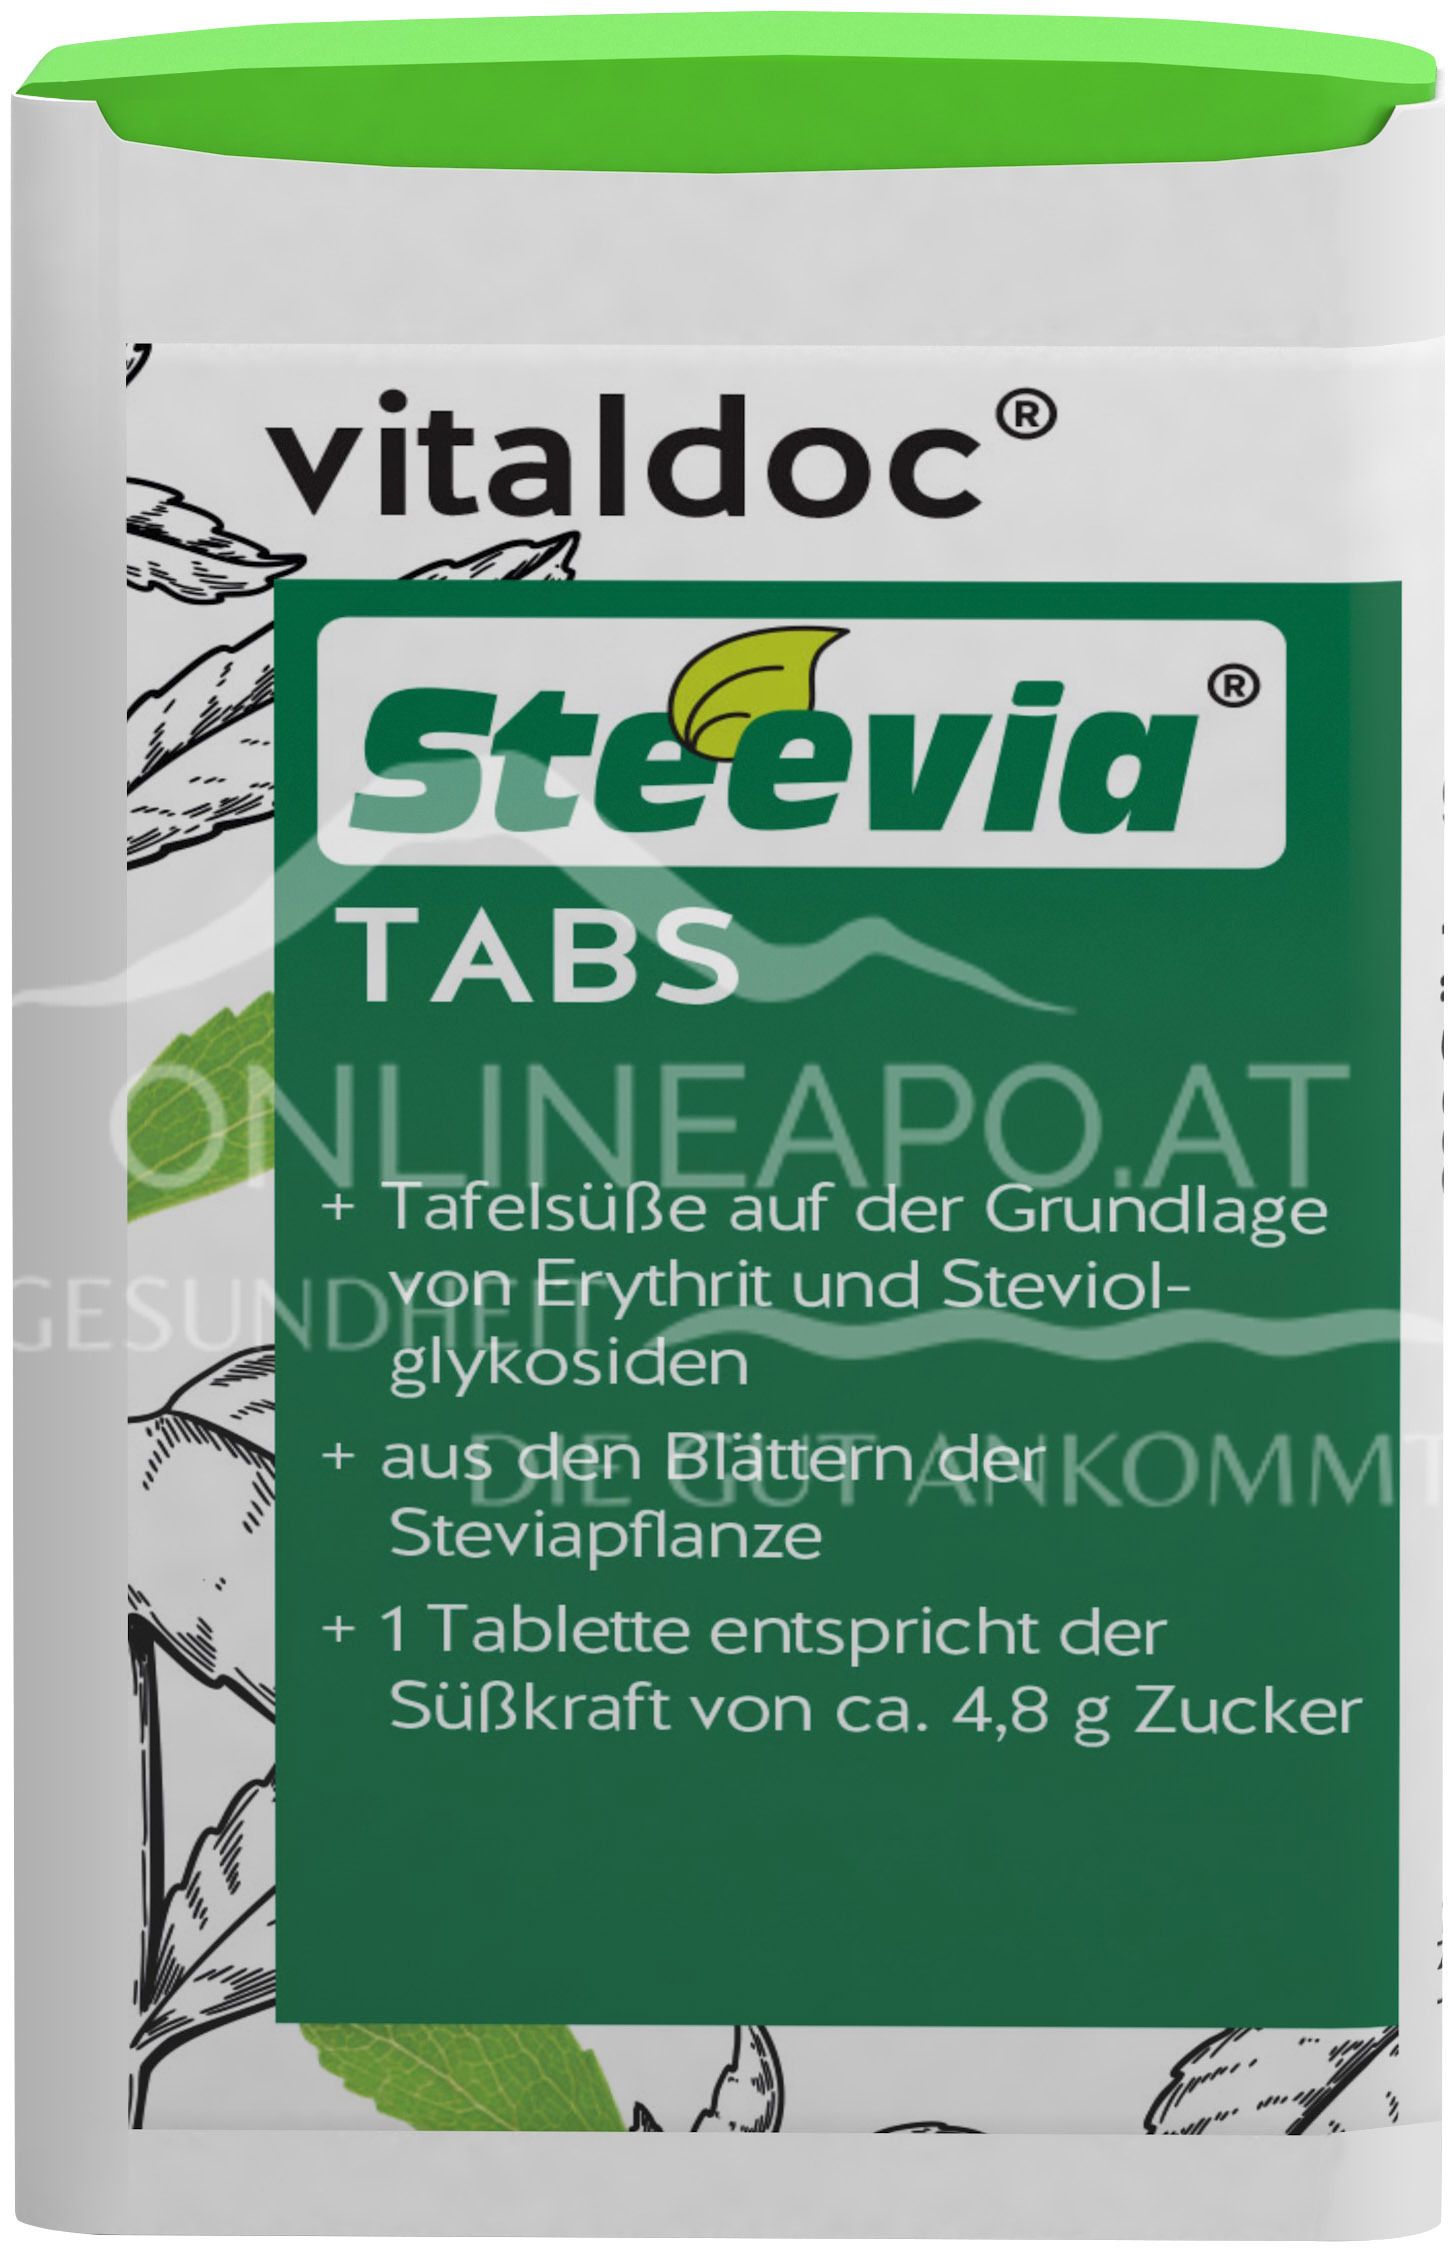 vitaldoc® Steevia® TABS Spenderbox